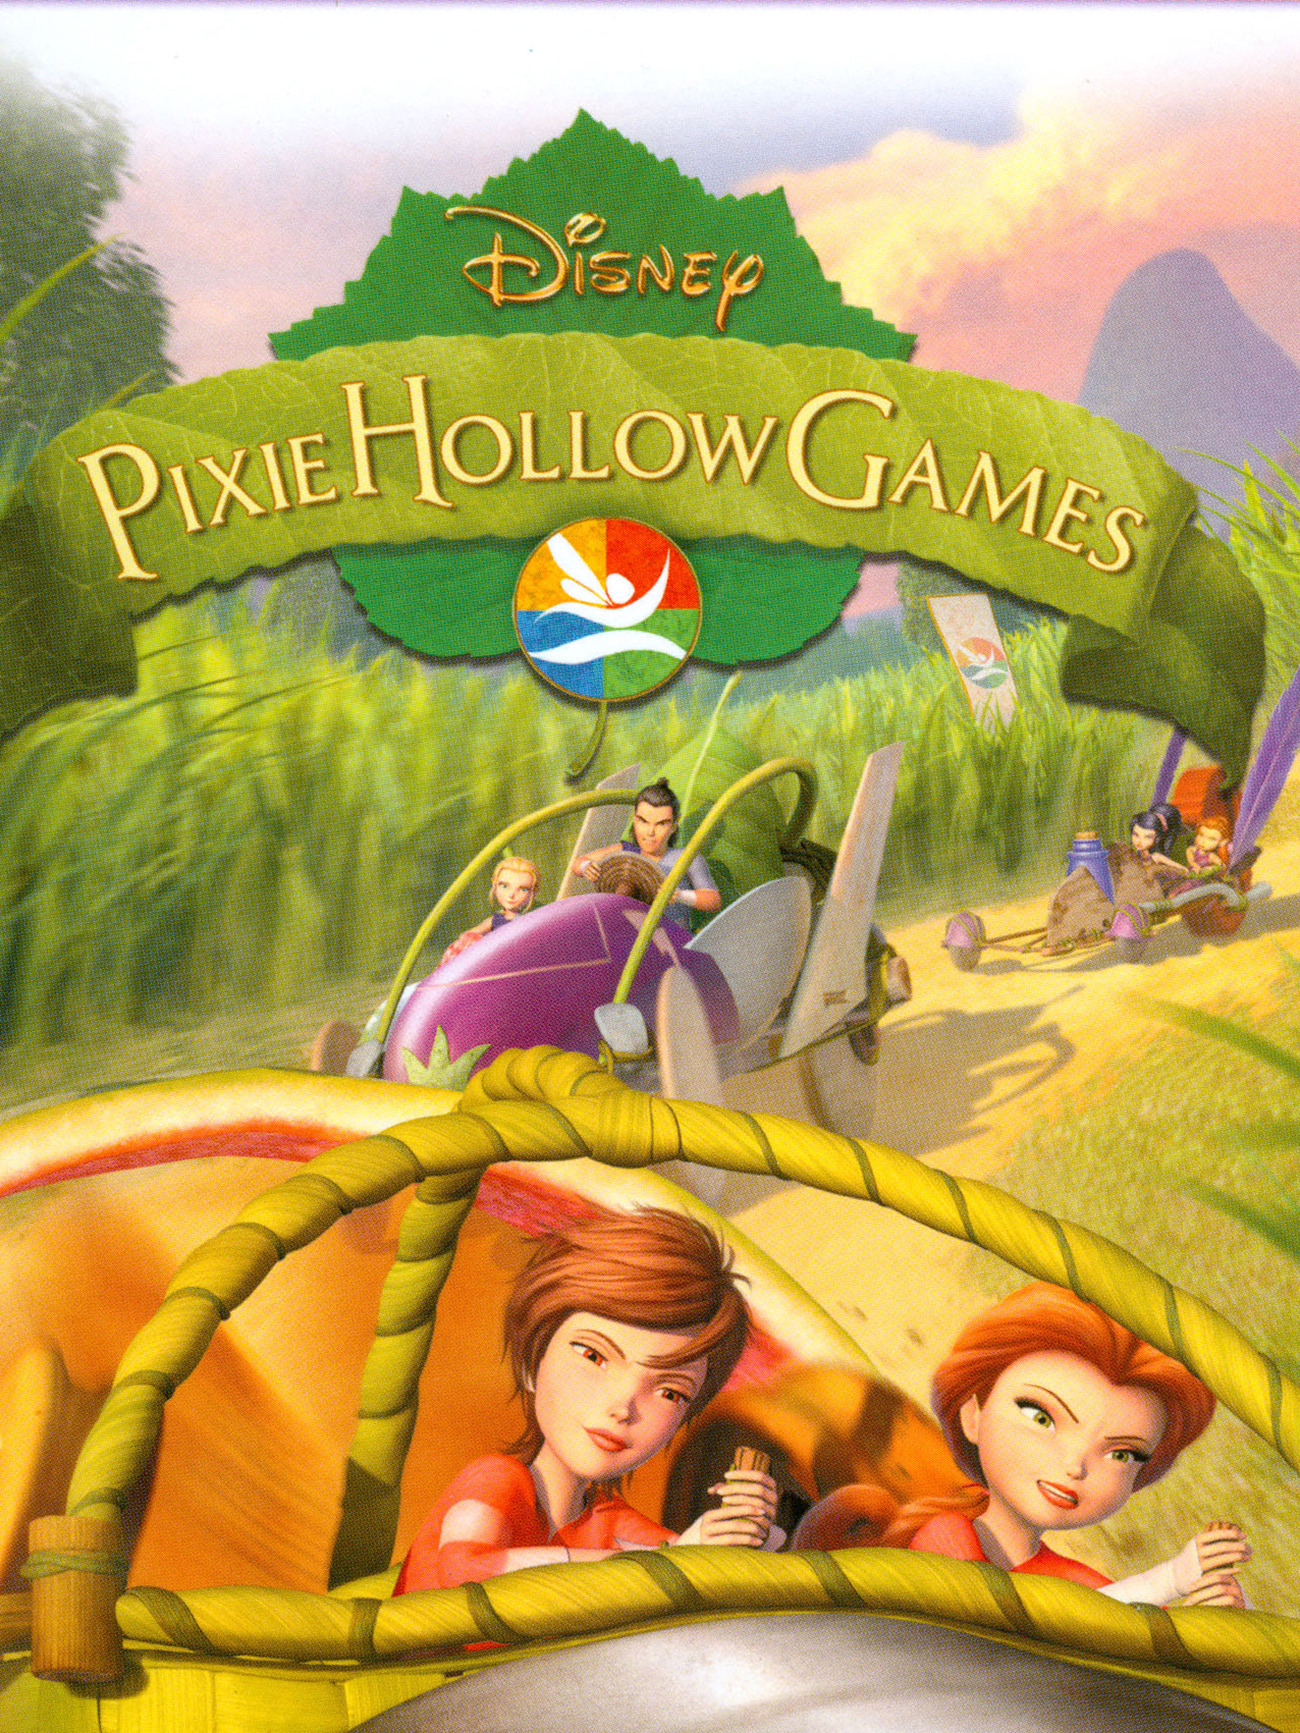 Pixie Hollow Games Cast